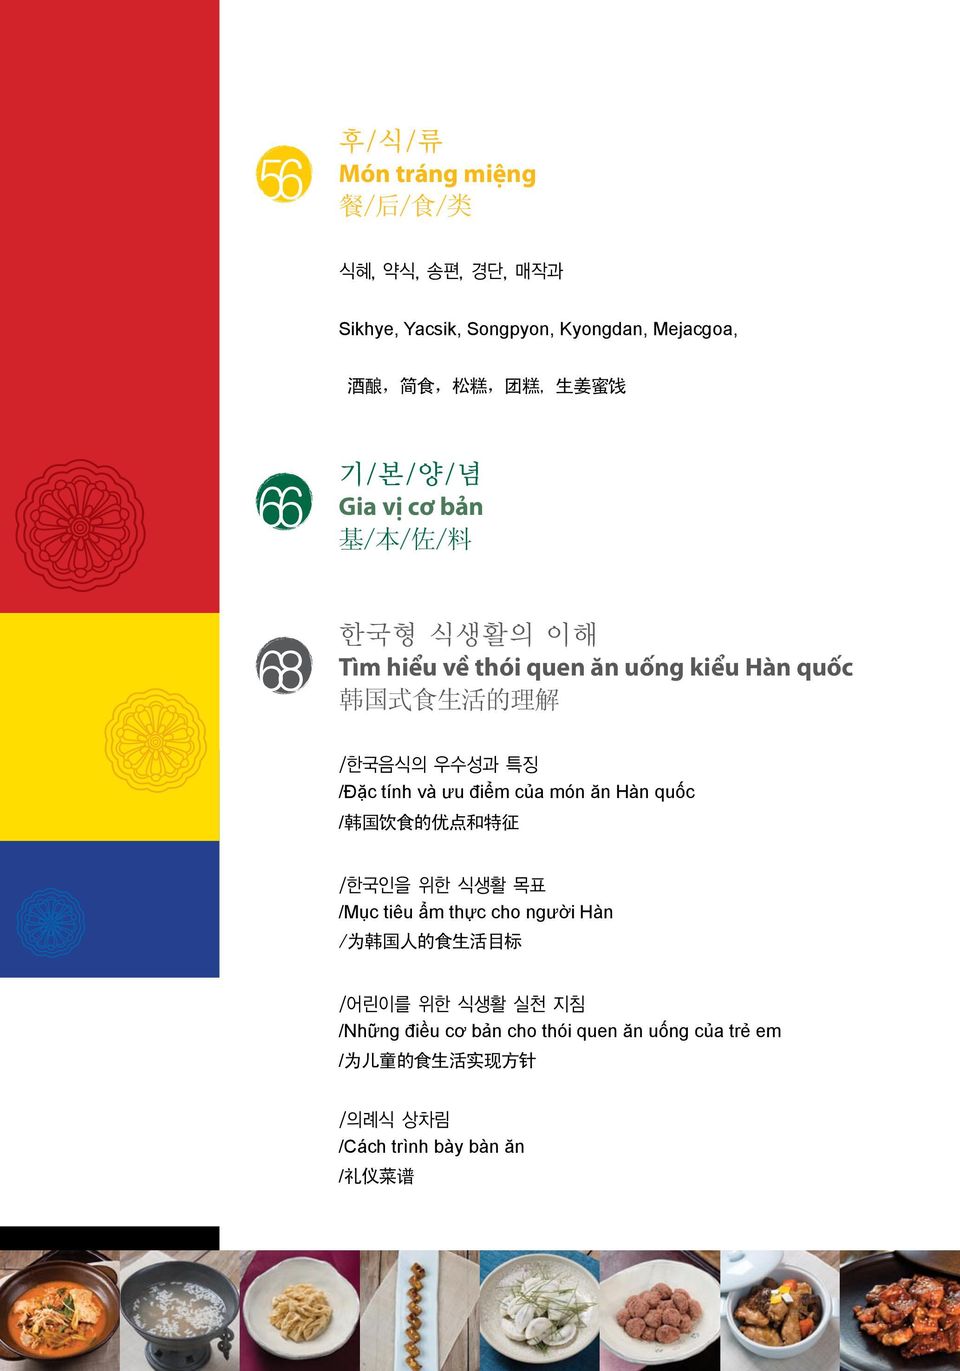 /Đặc tính và ưu điểm của món ăn Hàn quốc / 韩 国 饮 食 的 优 点 和 特 征 /한국인을 위한 식생활 목표 /Mục tiêu ẩm thực cho người Hàn / 为 韩 国 人 的 食 生 活 目 标